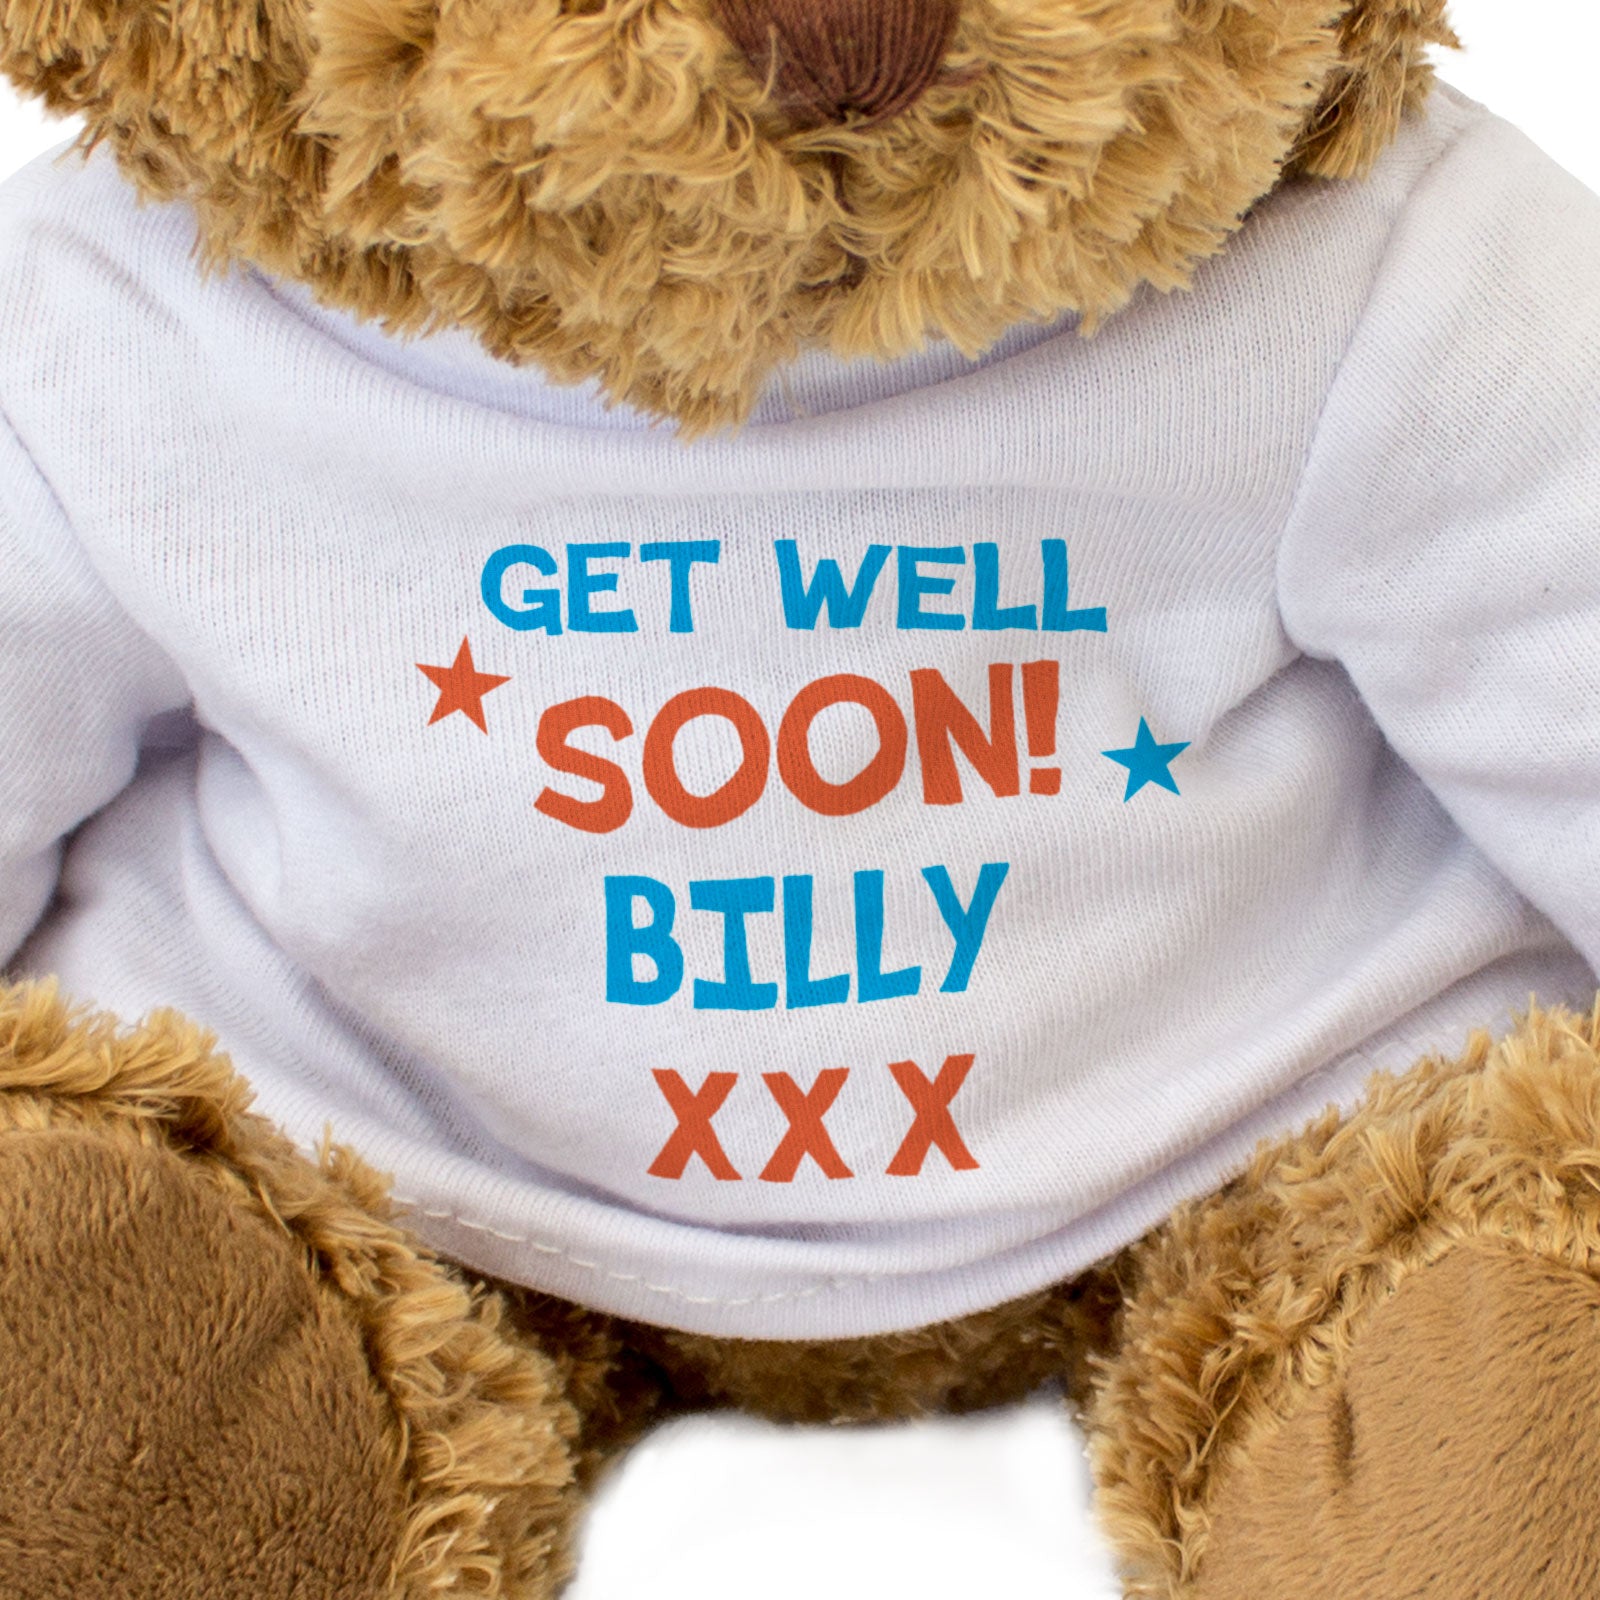 Get Well Soon Billy - Teddy Bear